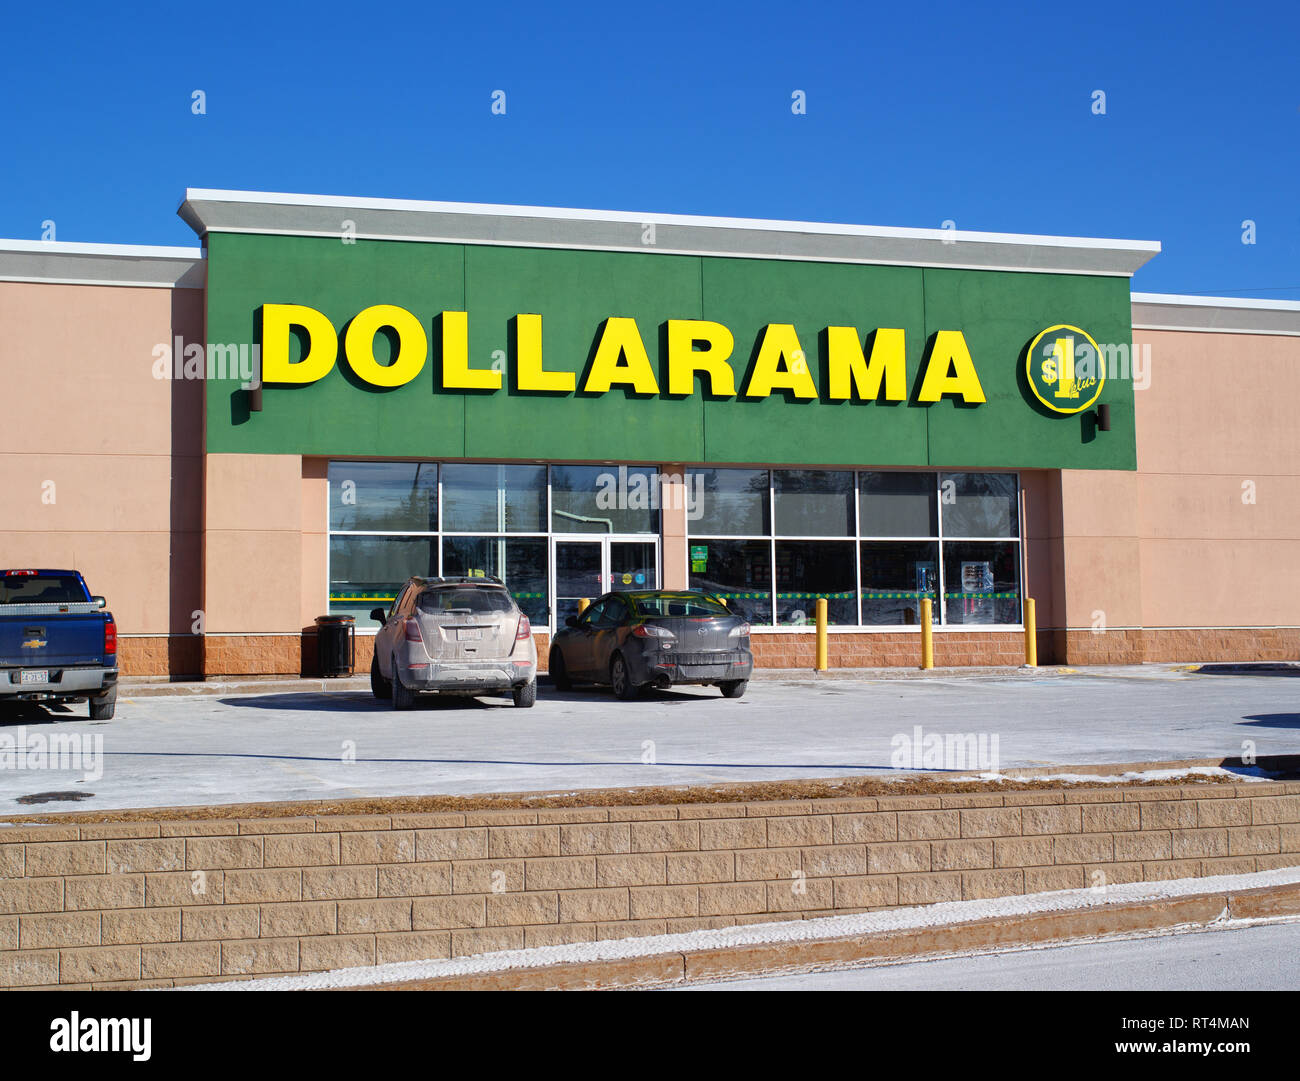 Truro, Kanada - Februar 27, 2019: dollarama Verkaufsplattform. Dollarama ist eine kanadische Handelskette, Verkauf von Artikeln 4 Dollar und weniger mit mehr als 1000 Stockfoto